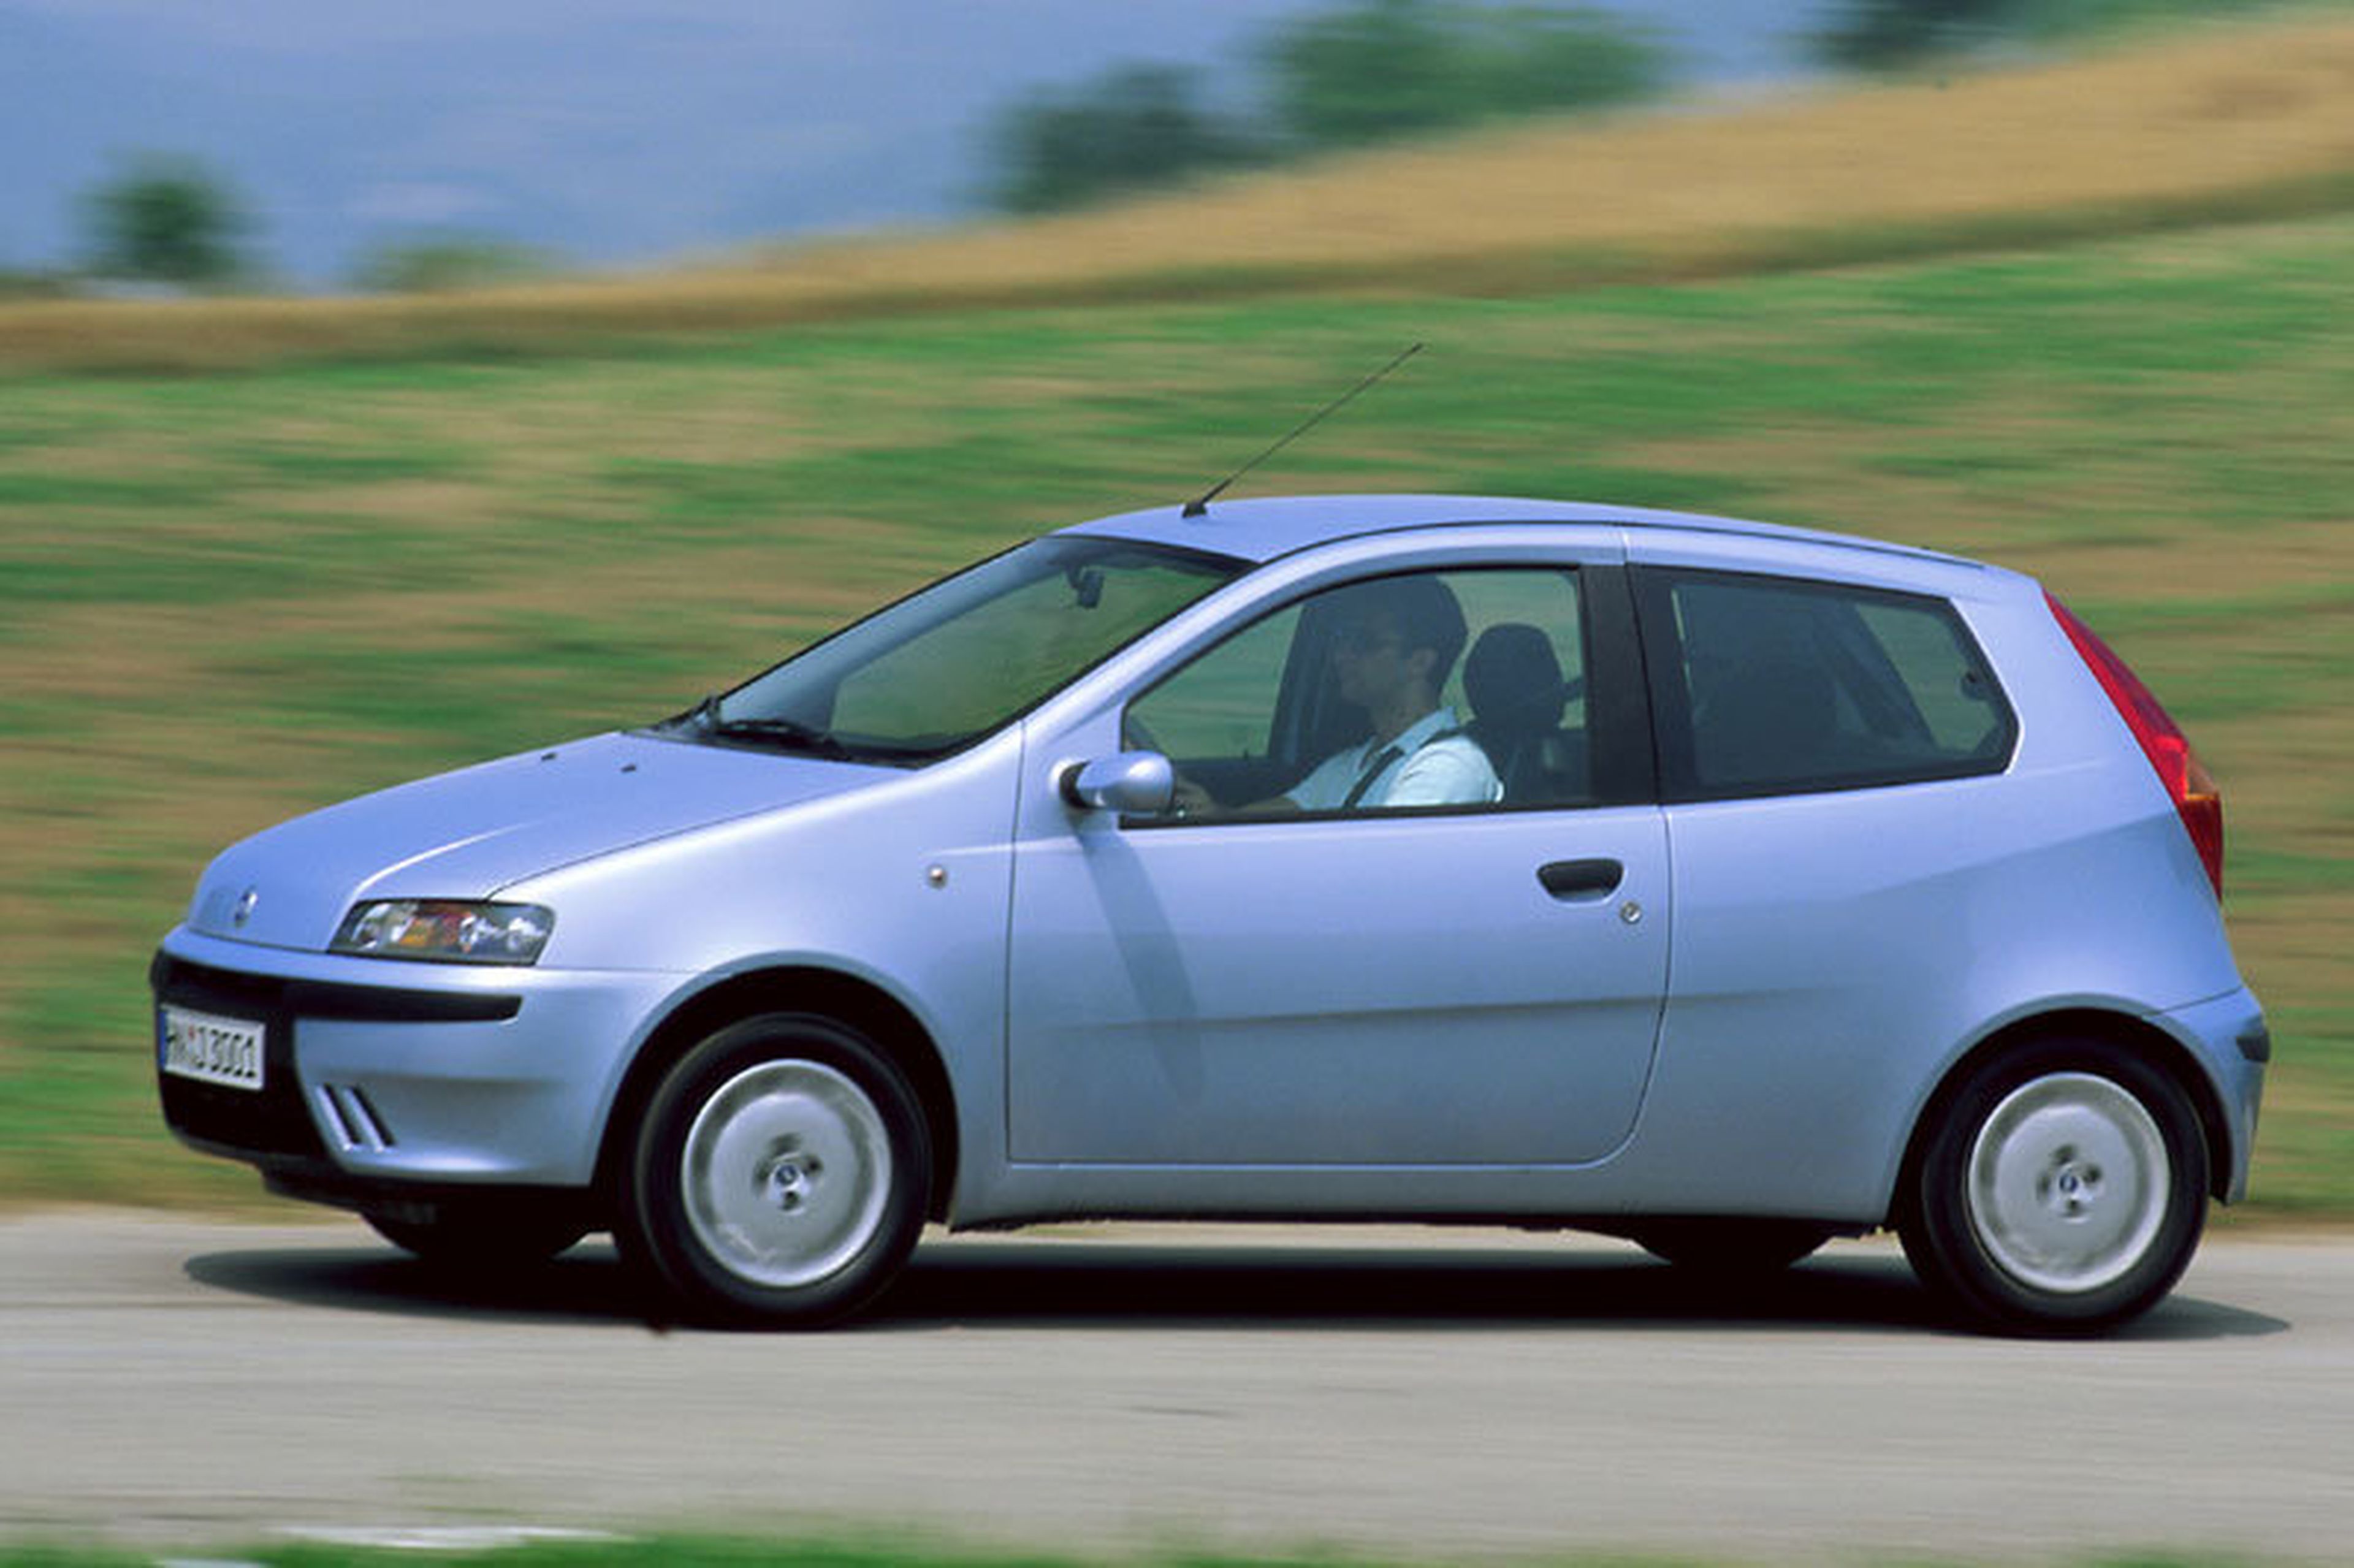 Fiat Punto o Seat Ibiza año 2000